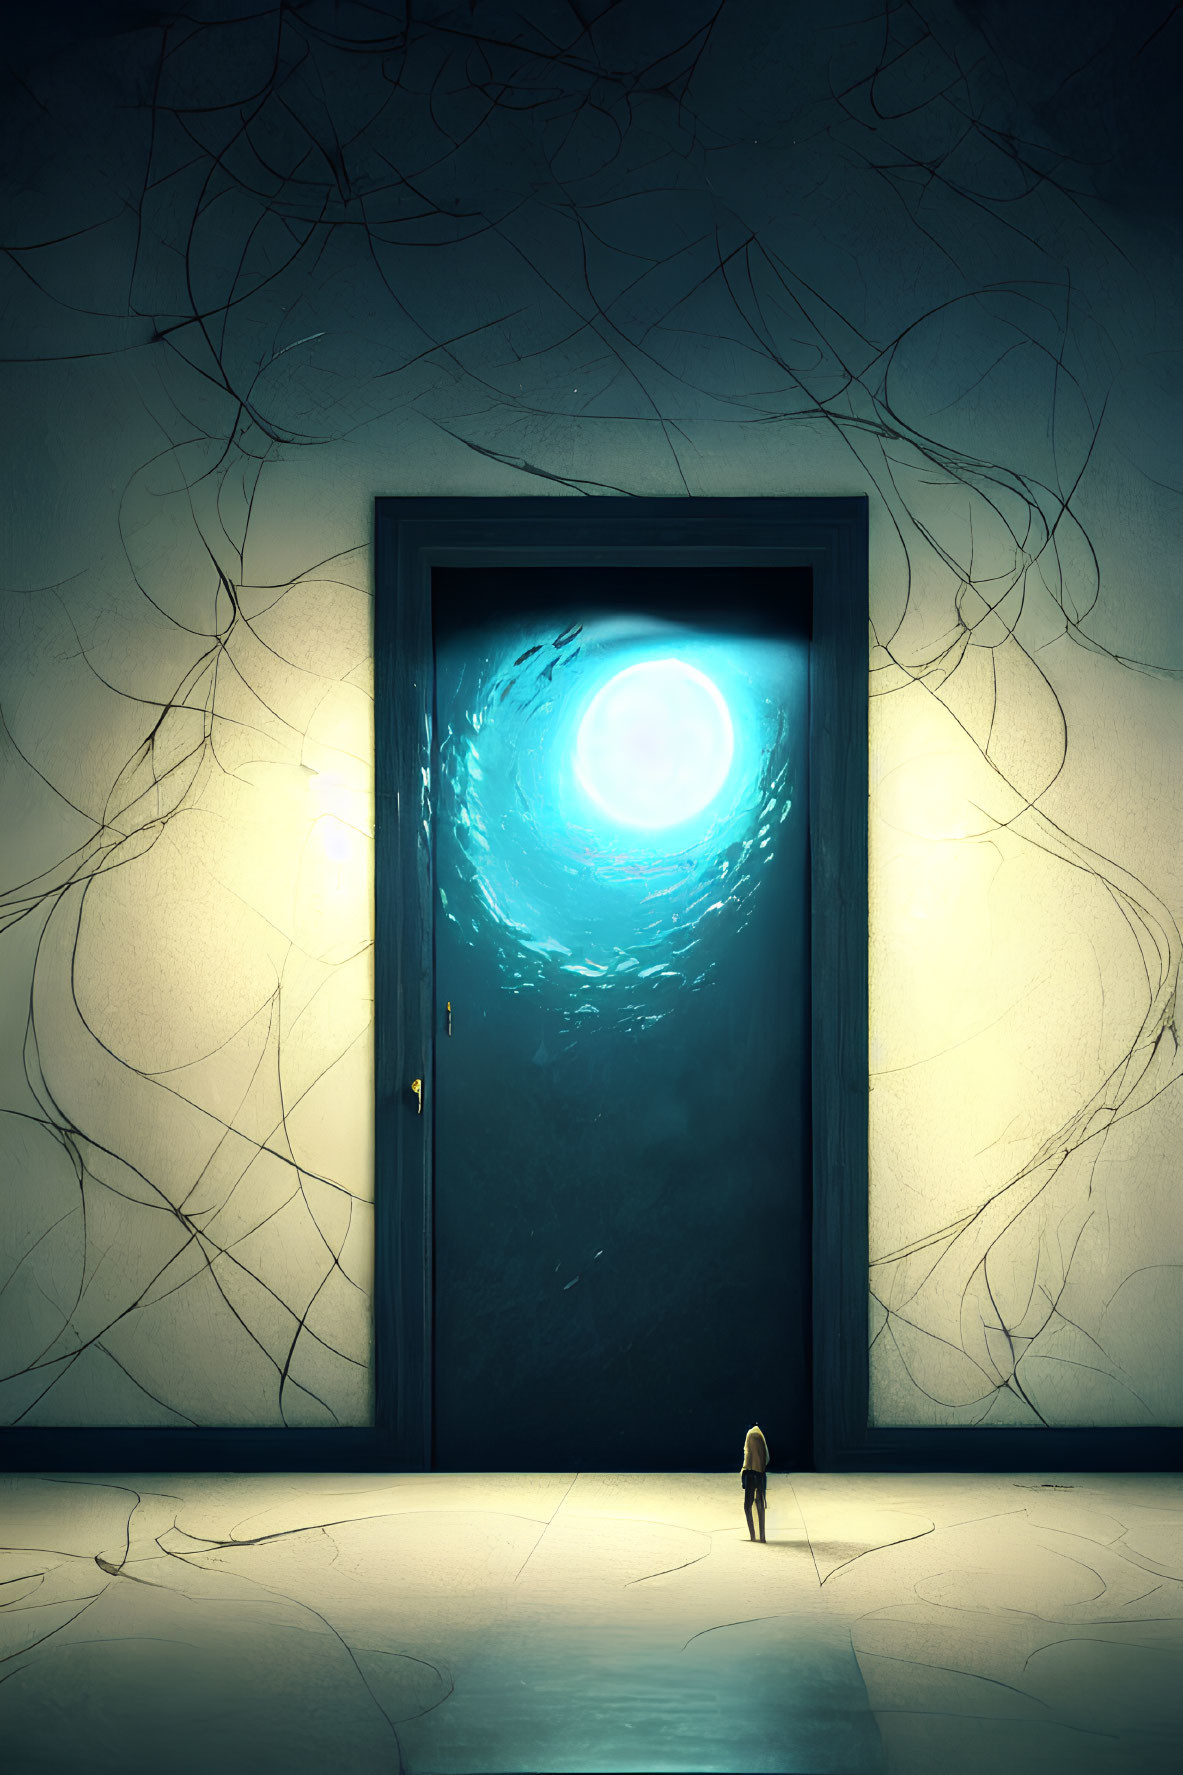 Mysterious figure by glowing doorway in dark room